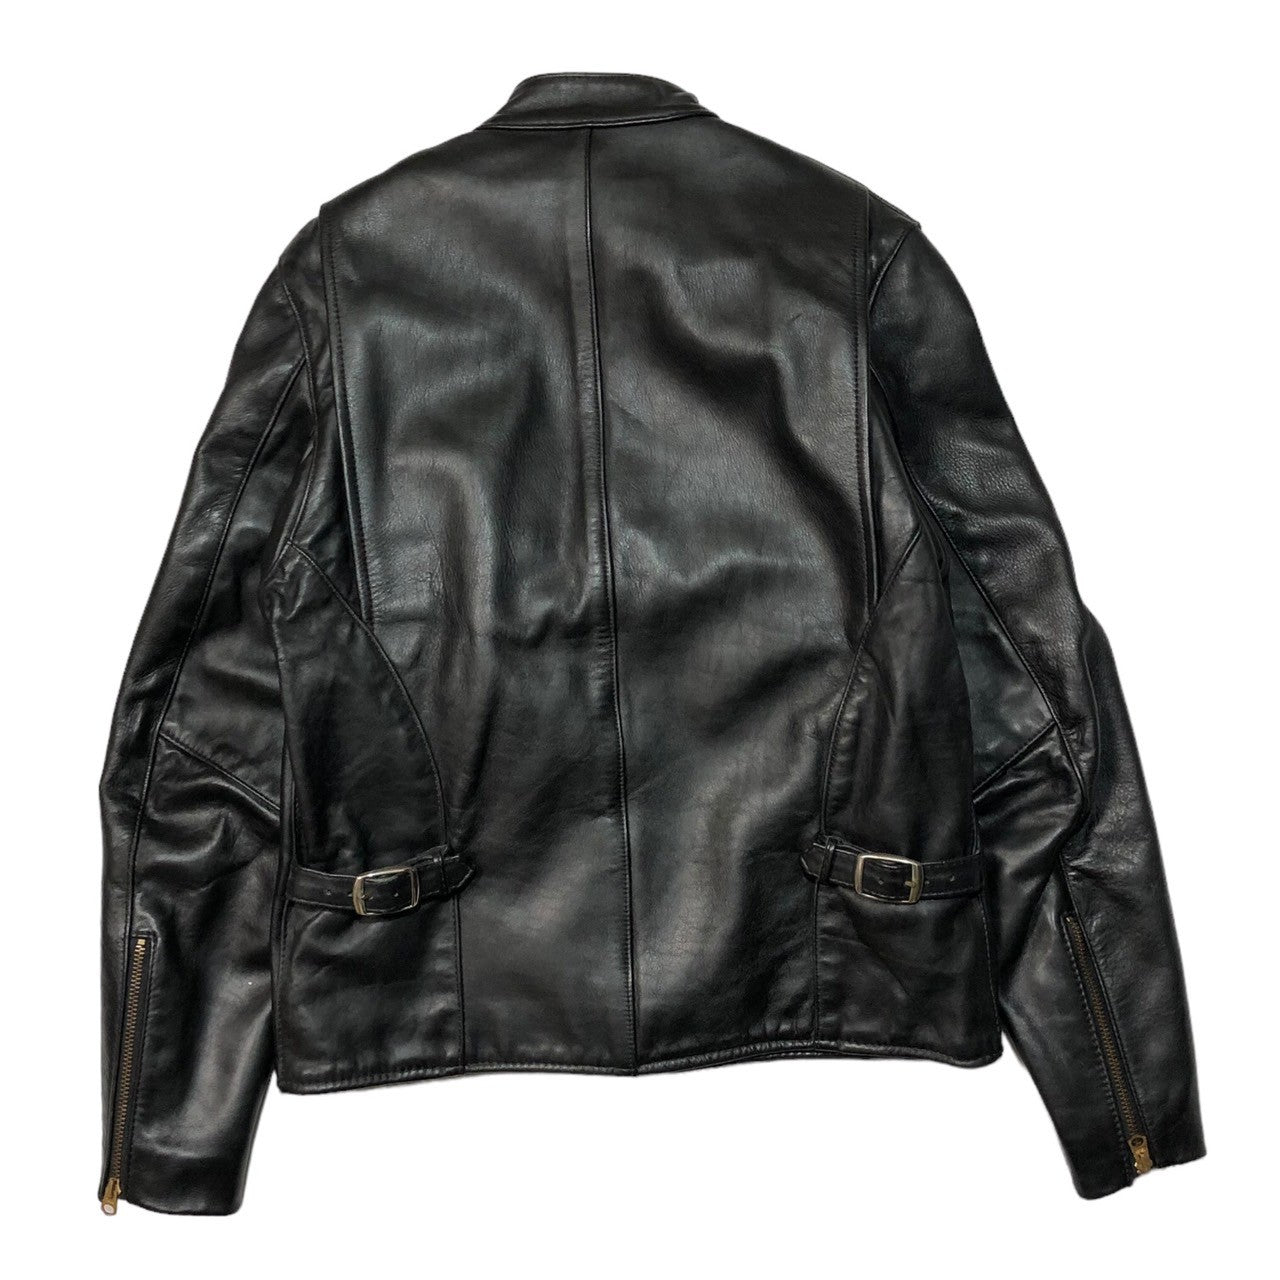 VANSON(バンソン) type B  single rider jacket シングル ライダース ジャケット レザー ジャケット タイプB 18877A07 40(L程度) ブラック